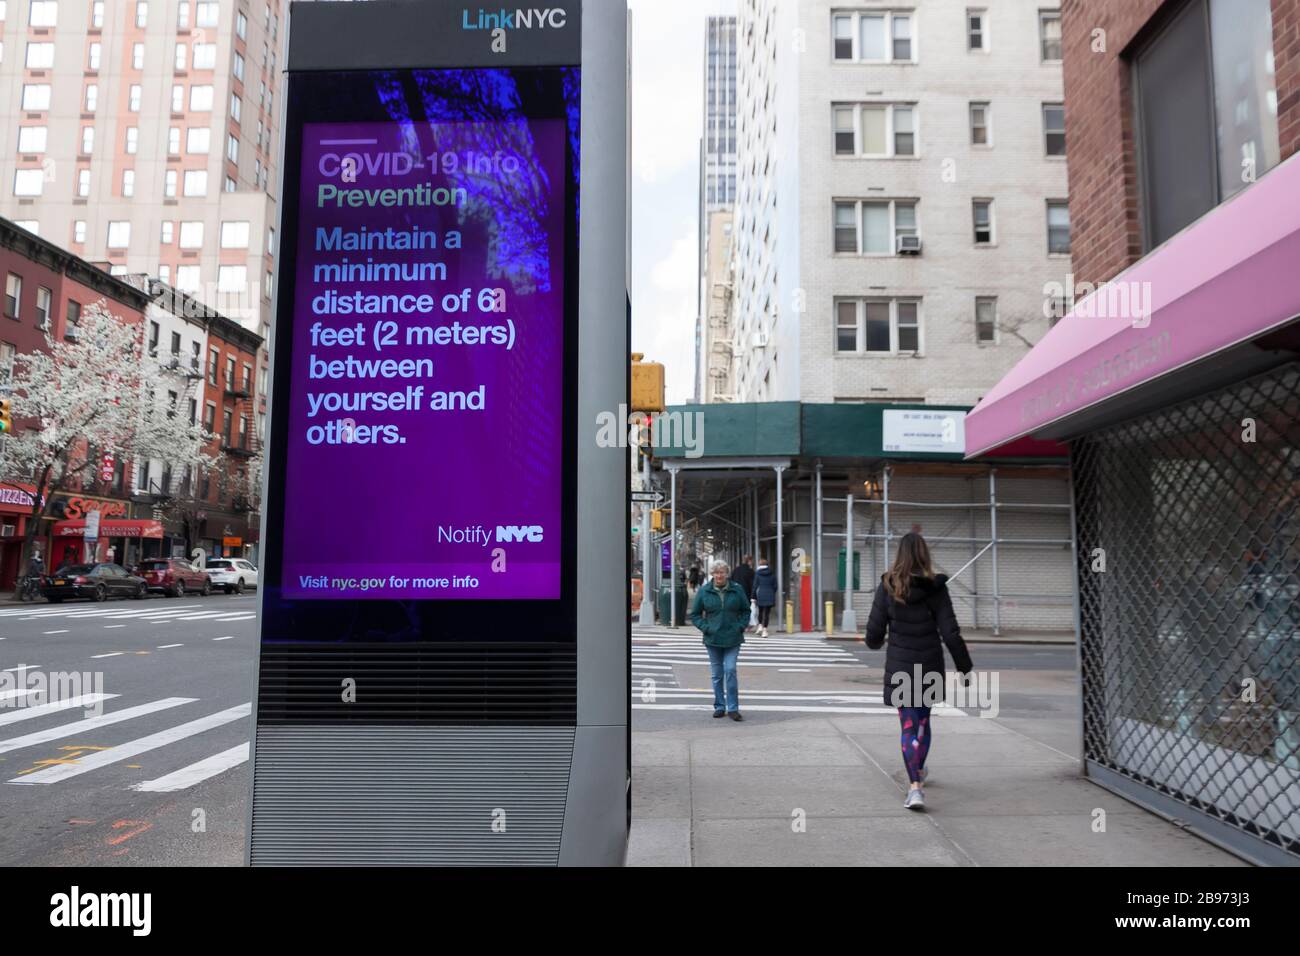 Le kiosque numérique LinkNYC affiche sur le trottoir des messages et des conseils de Covid-19 (coronavirus) sur les distances sociales avec les New-Yorkais. Banque D'Images